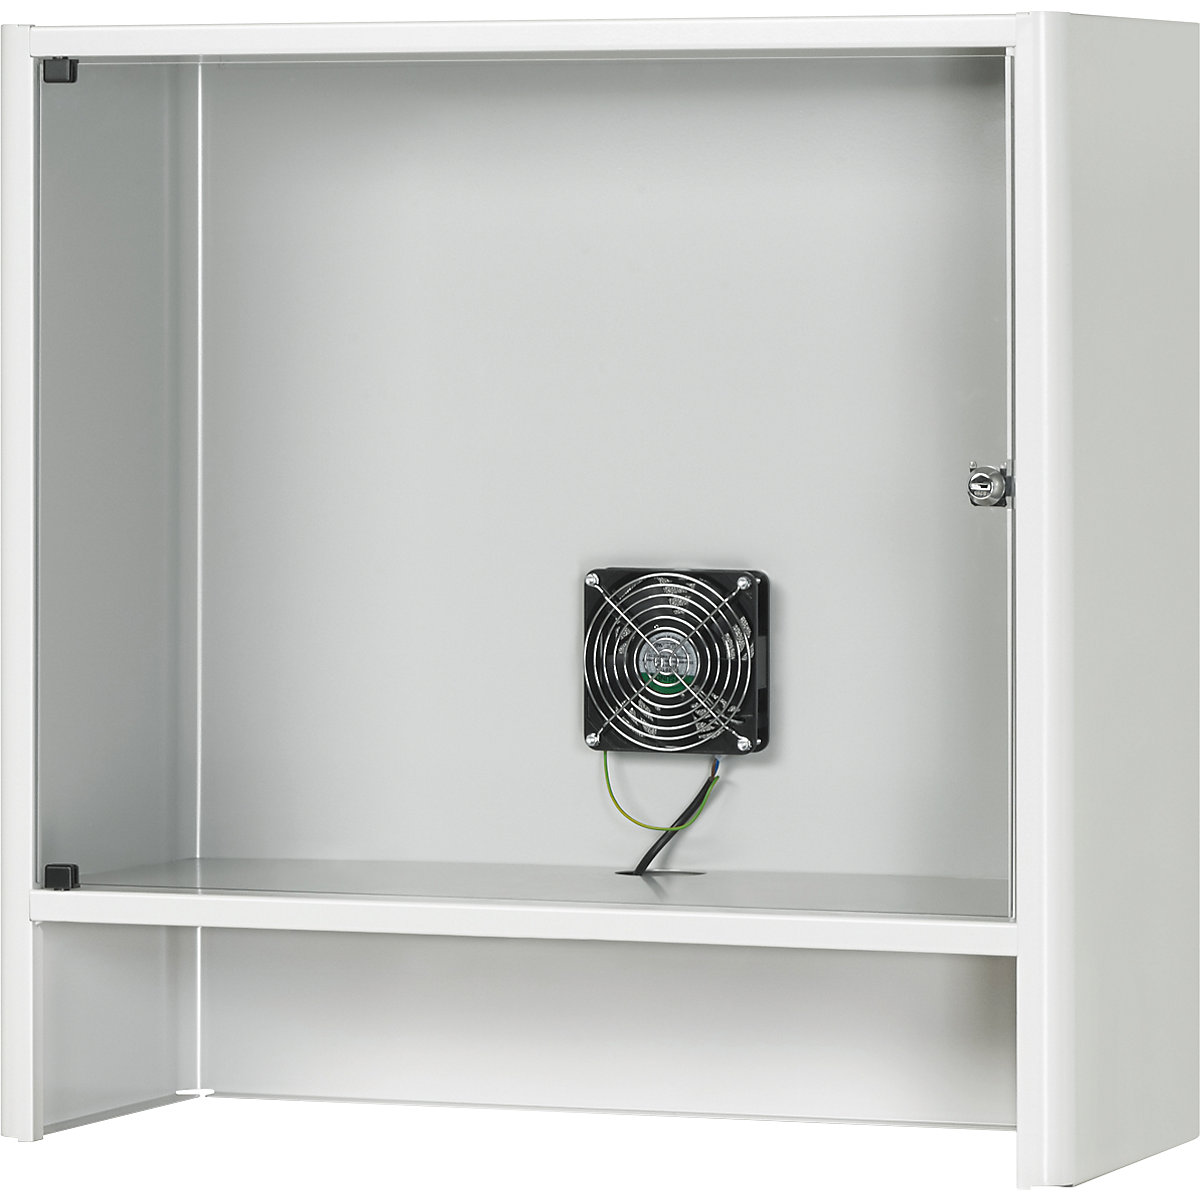 Kućište za monitor s integriranim aktivnim ventilatorom – RAU, VxŠxD 710 x 720 x 300 mm, u svijetlosivoj boji RAL 7035-3